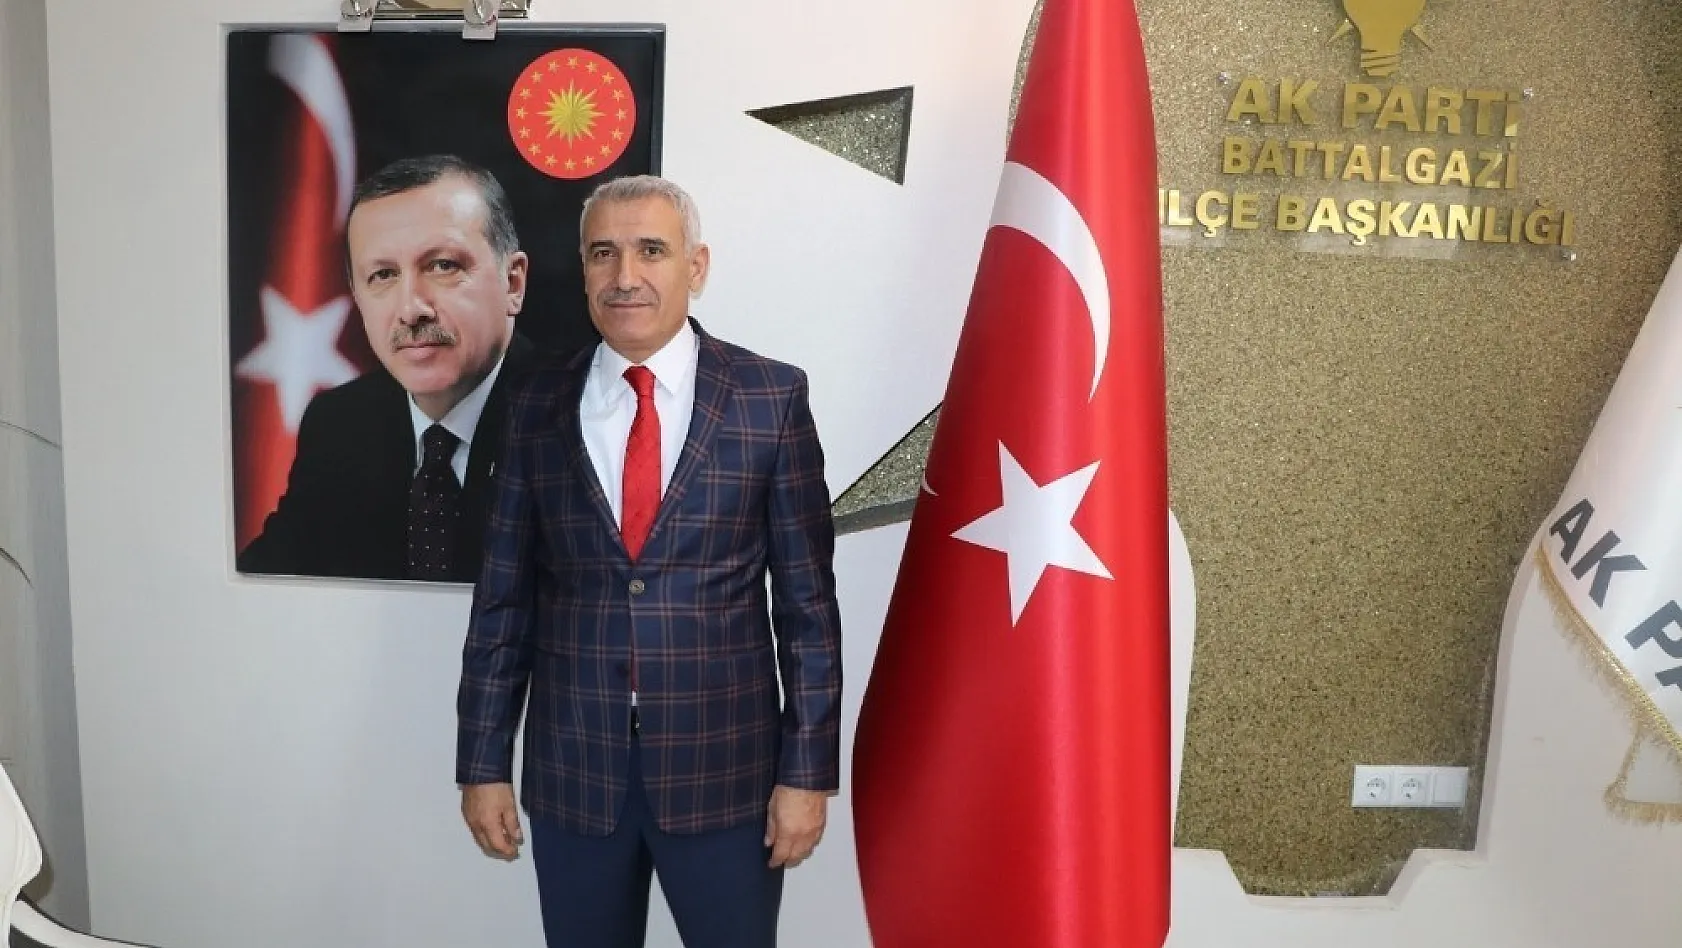 AK Parti Battalgazi Belediye Başkan Adayı Osman Güder: 